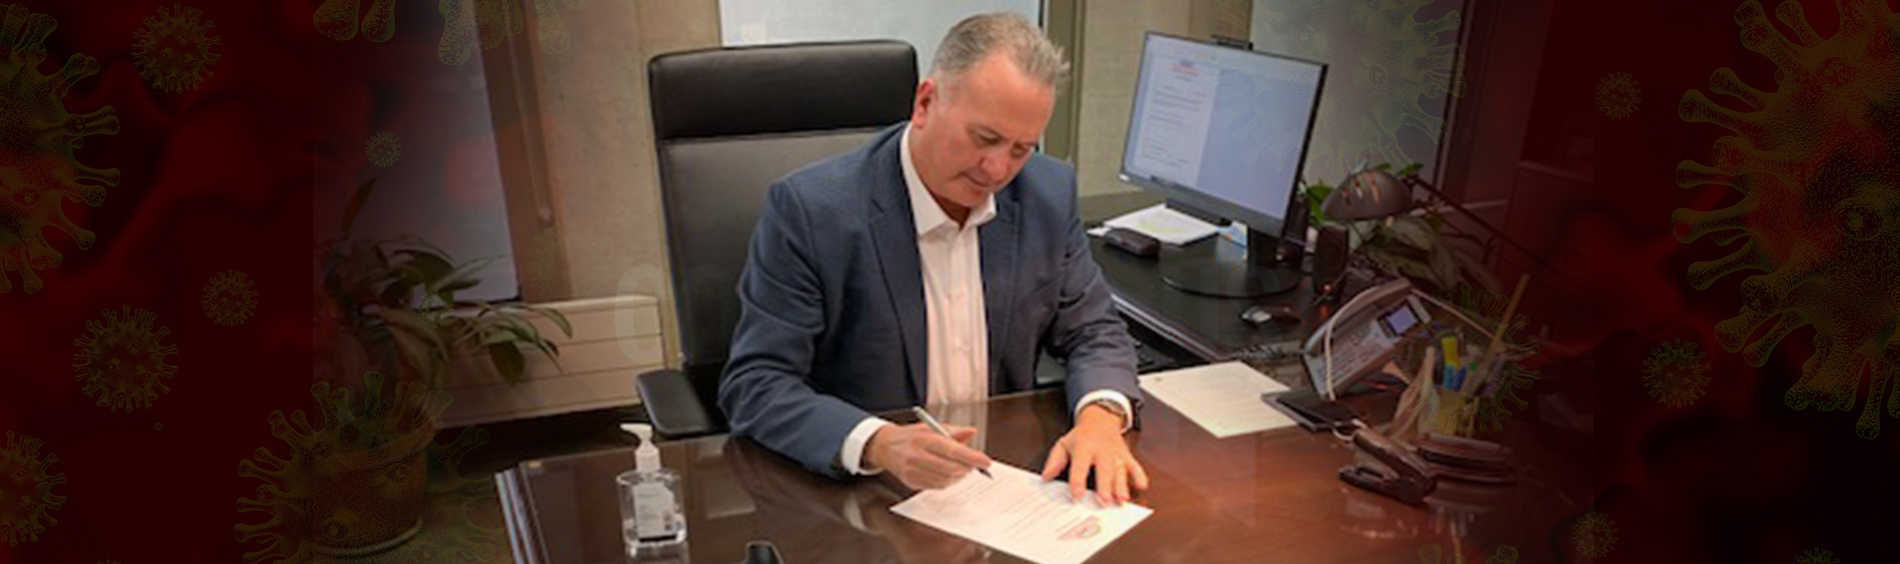 Mayor signing emergency declaration